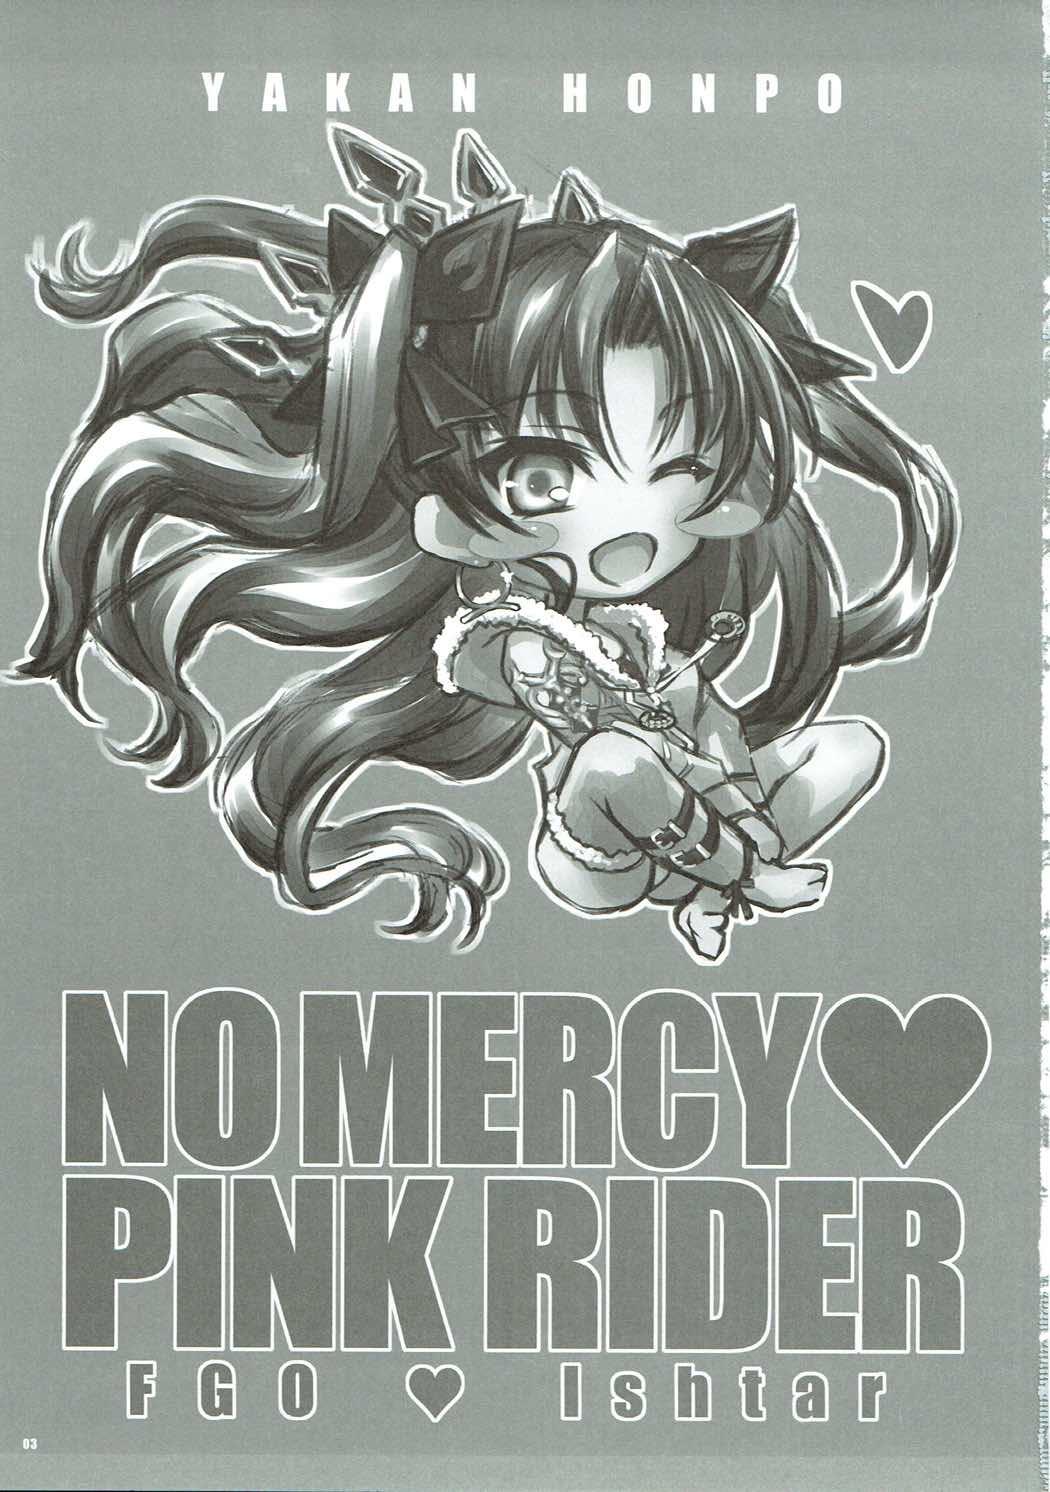 Mom Yousha no Nai Pink Rider - No Mercy Pink Rider - Fate grand order Tinytits - Page 2